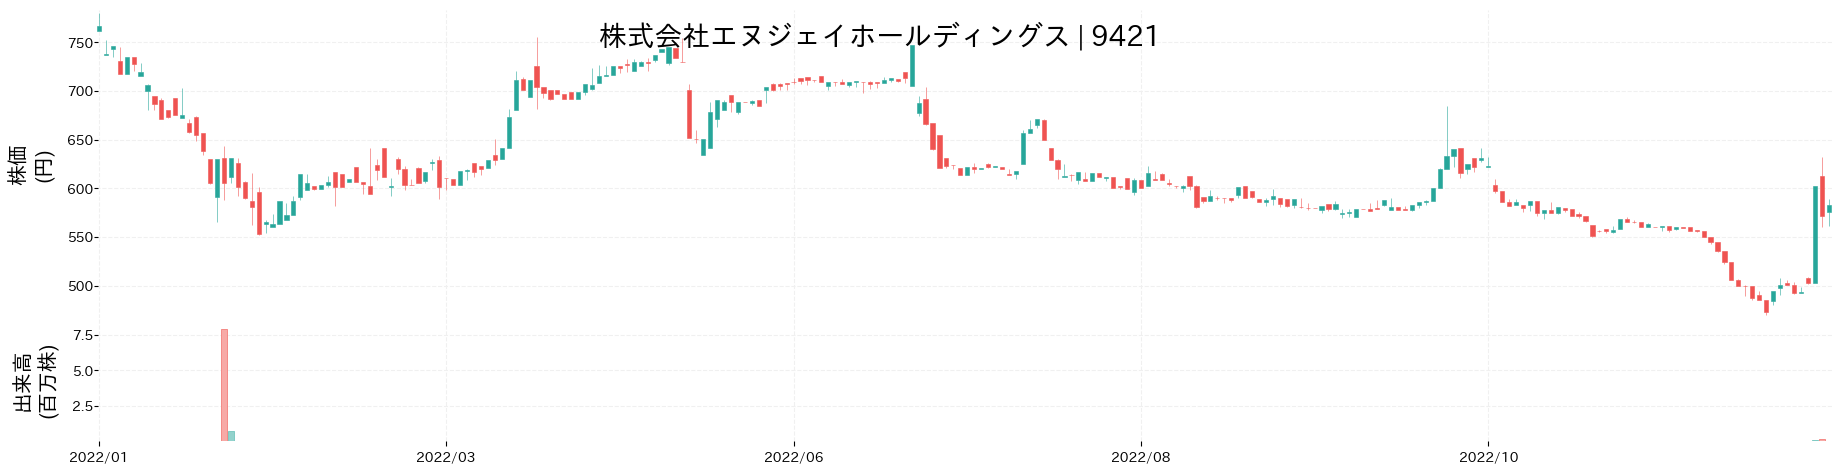 エヌジェイホールディングスの株価推移(2022)